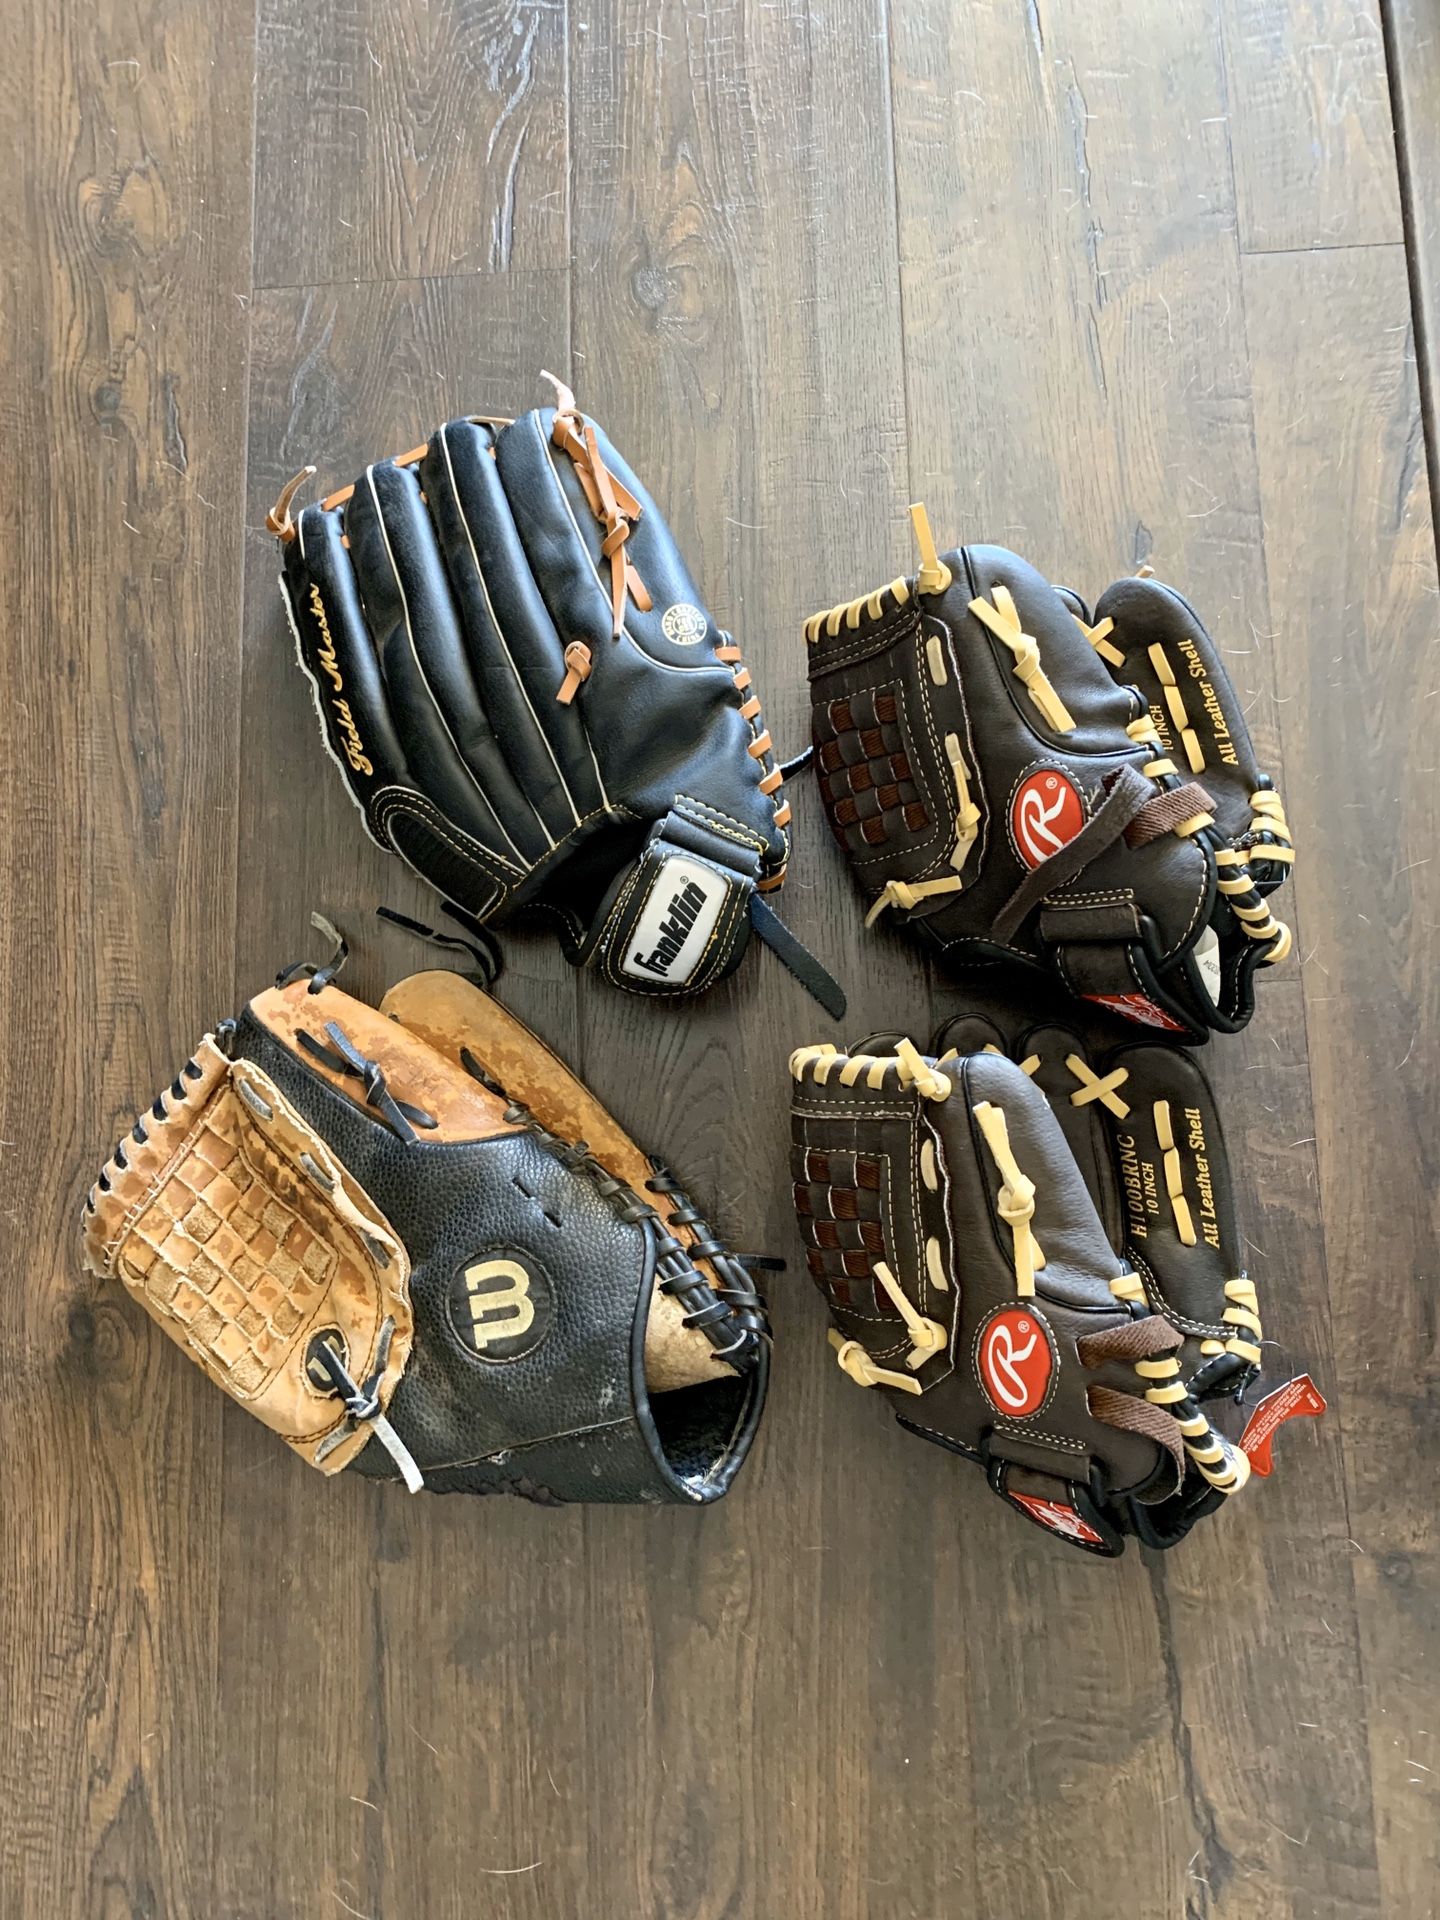 4 baseball gloves and 4 bats $65